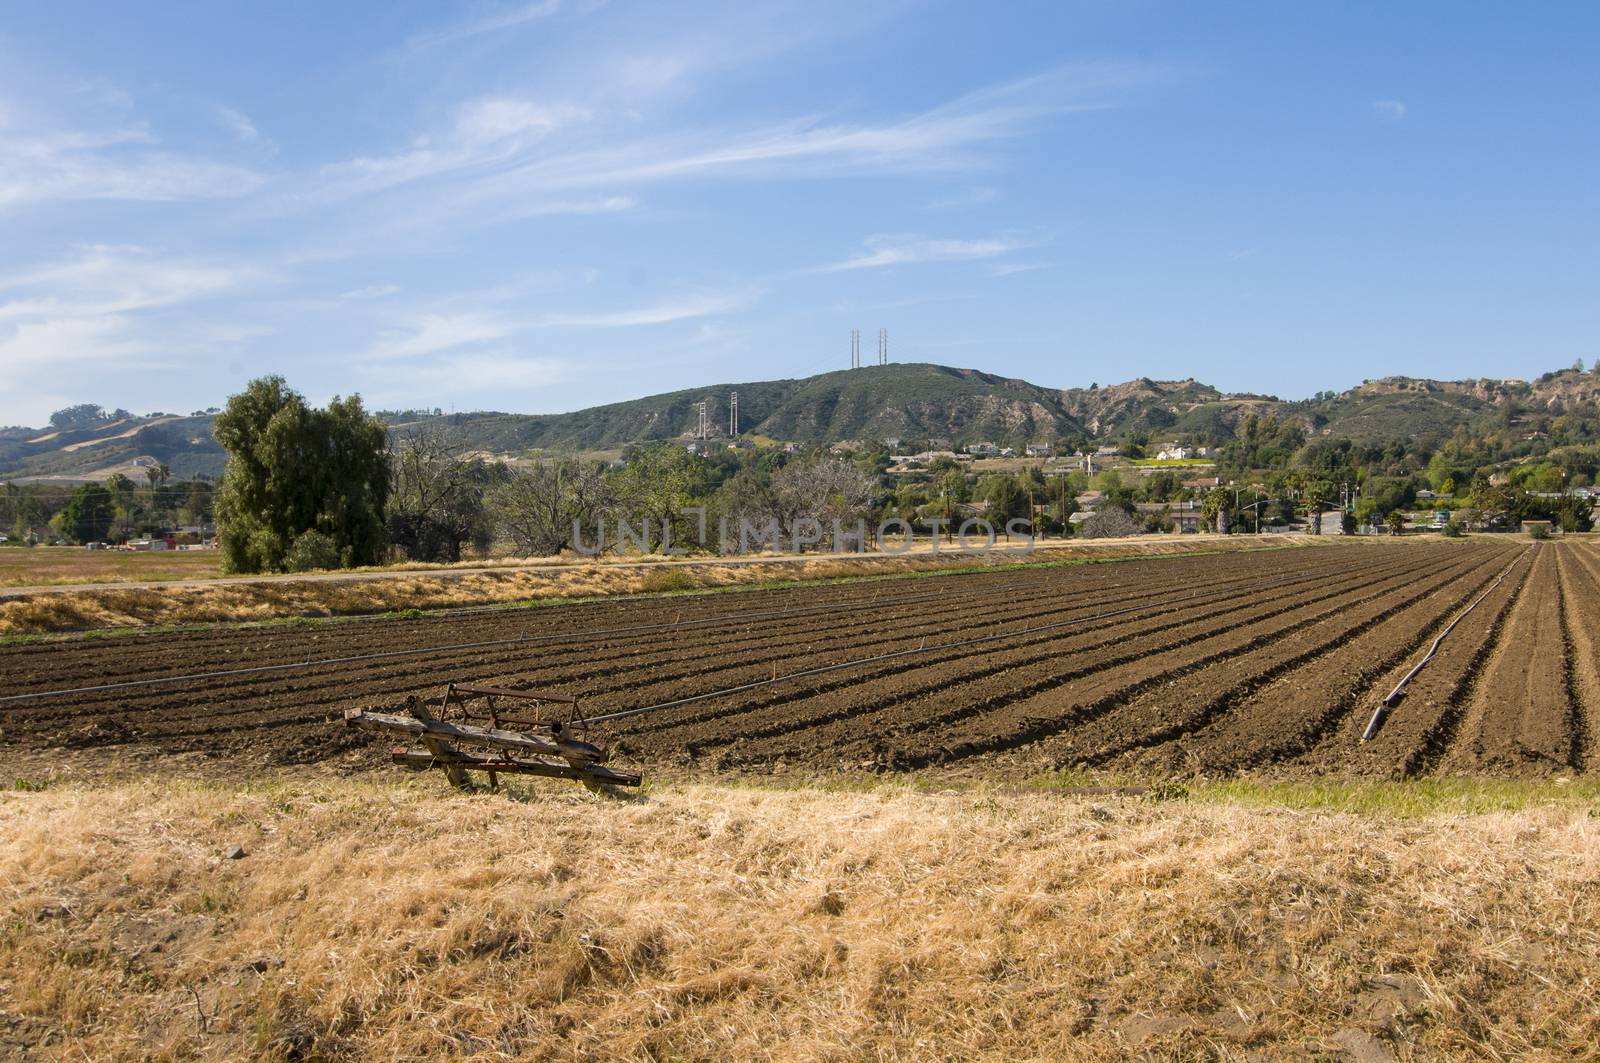 Farm field in Camarillo, California